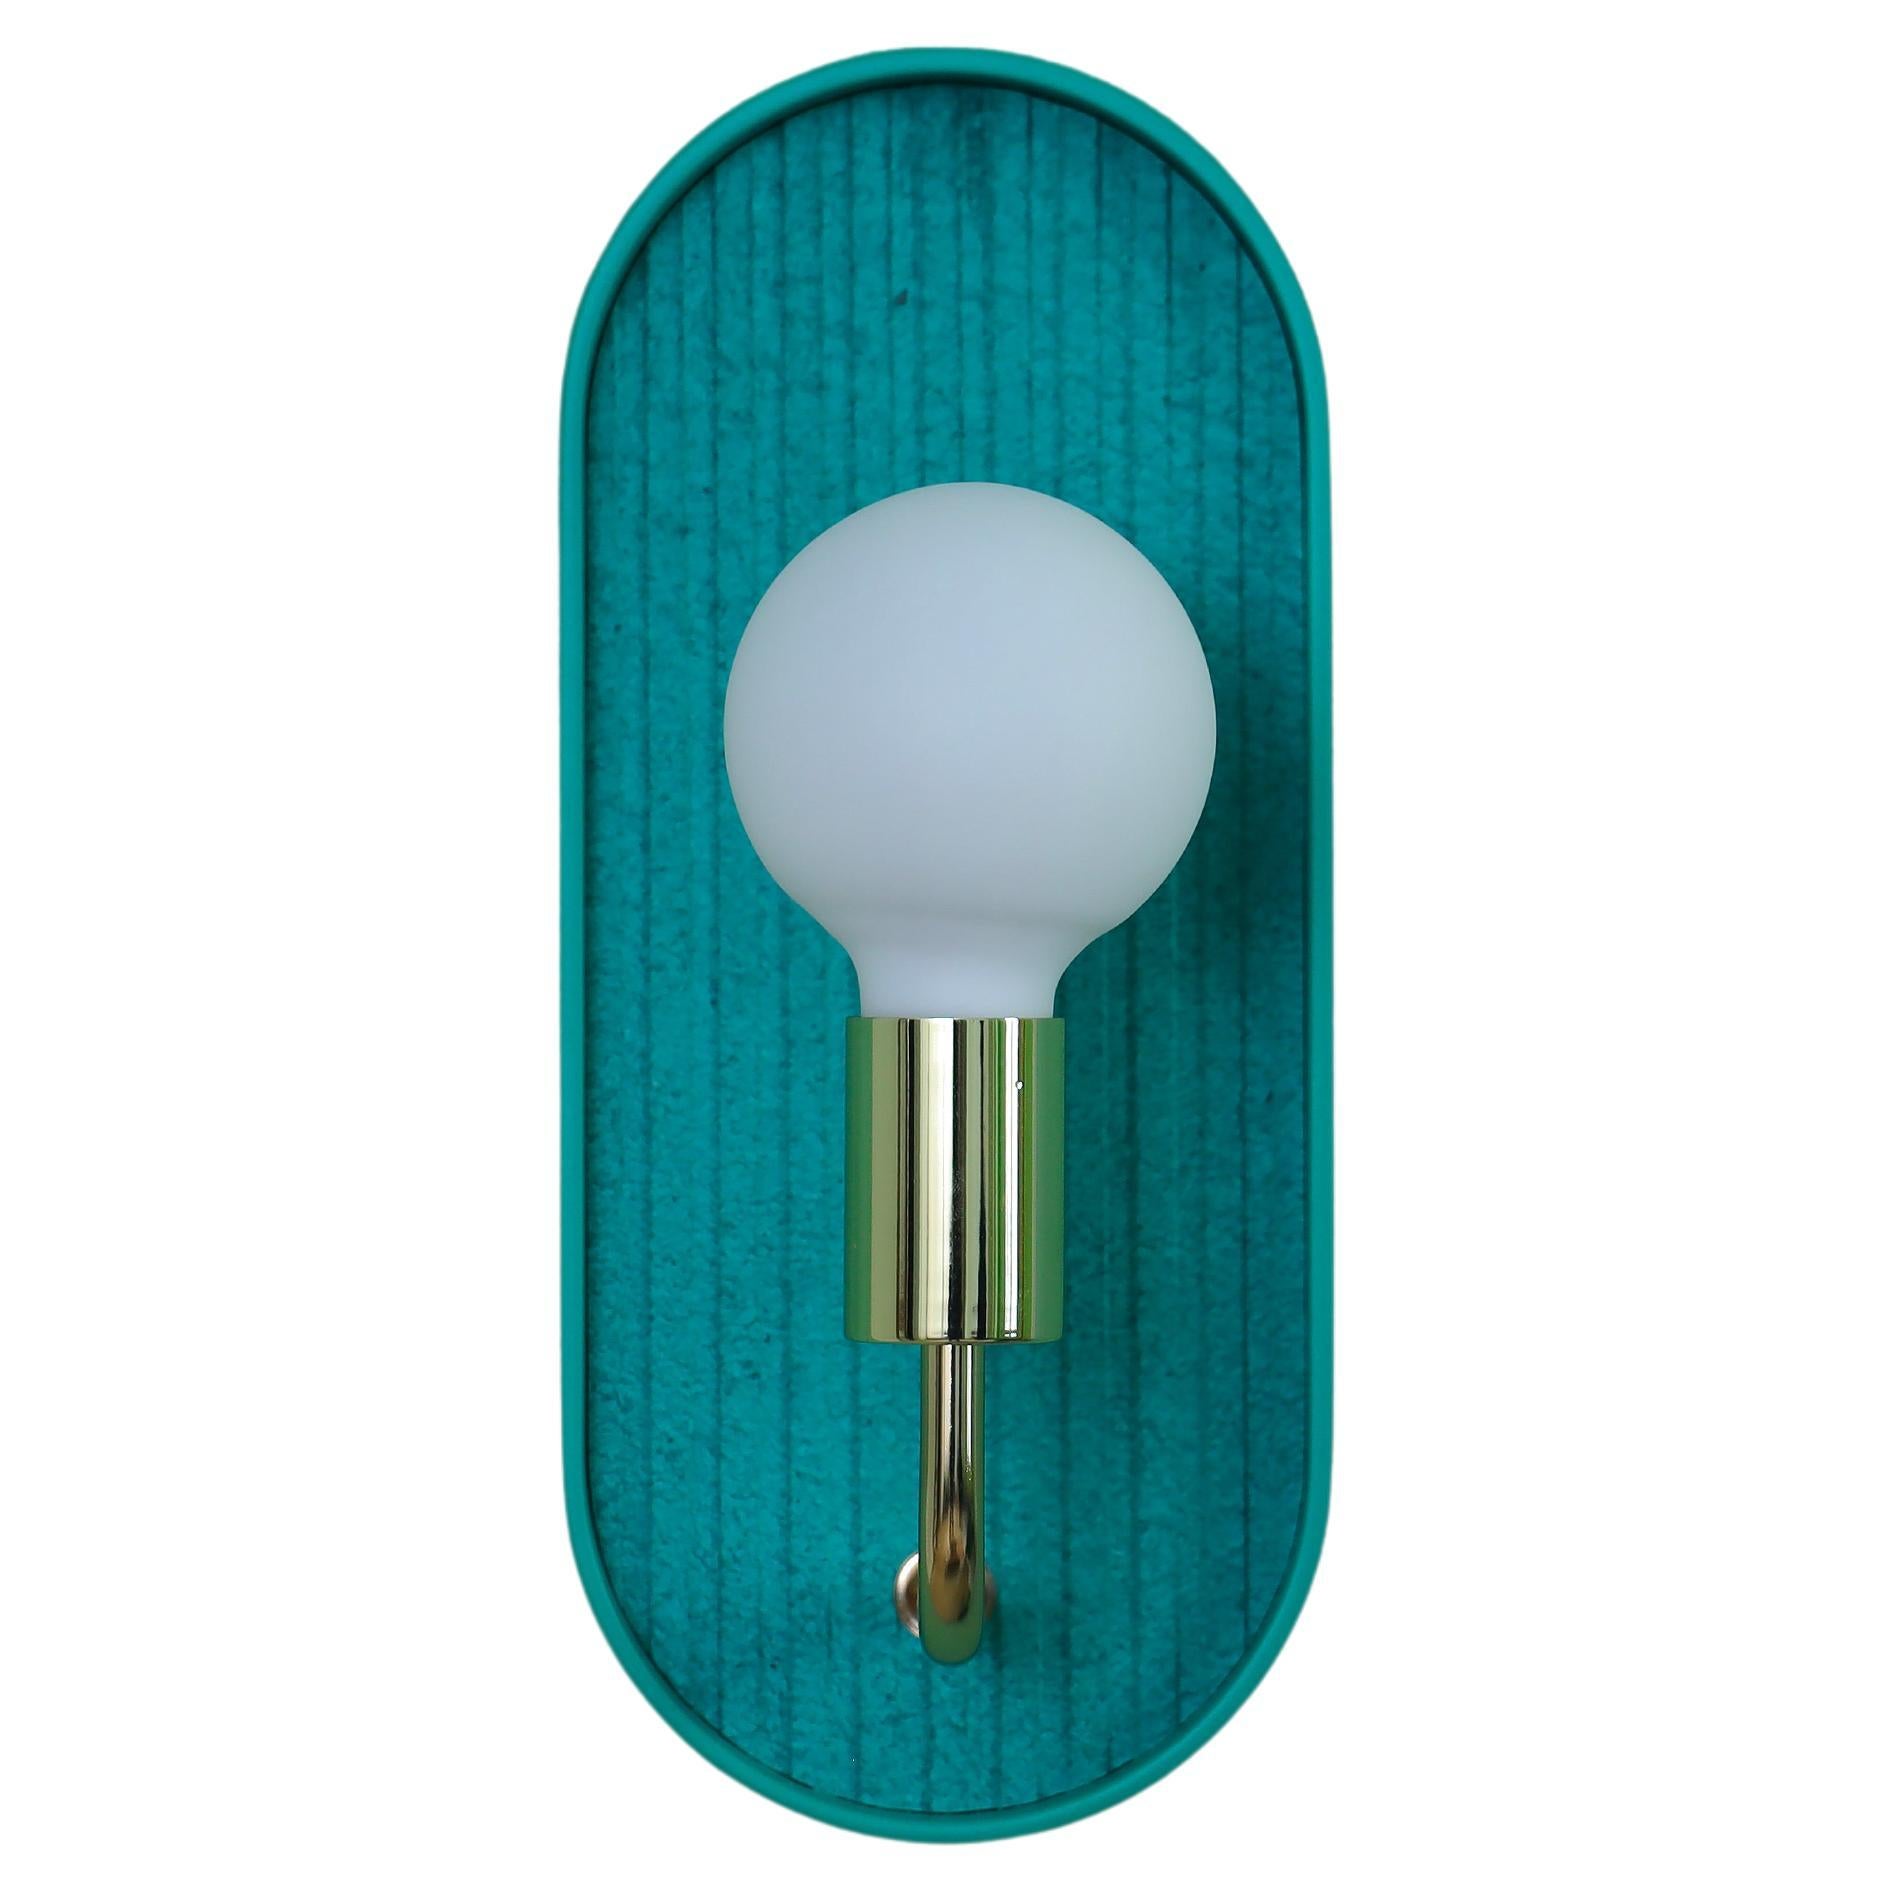 Bracketlamp Mini Oblong vert - vert 